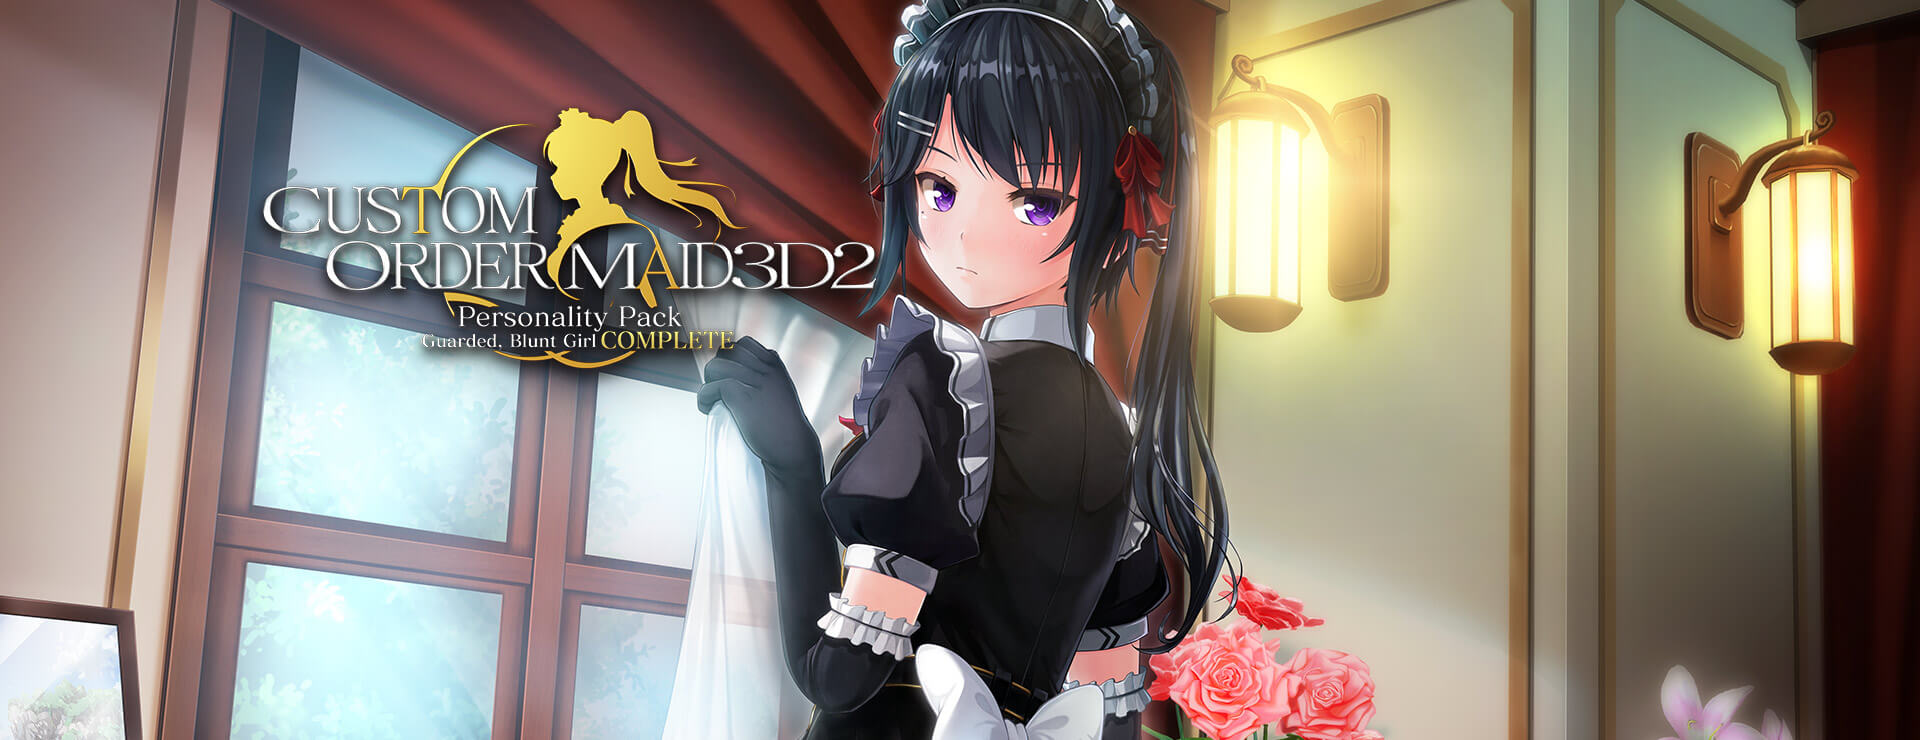 Custom Order Maid 3D2 Guarded, Blunt Girl Complete Bundle - Simulación Juego